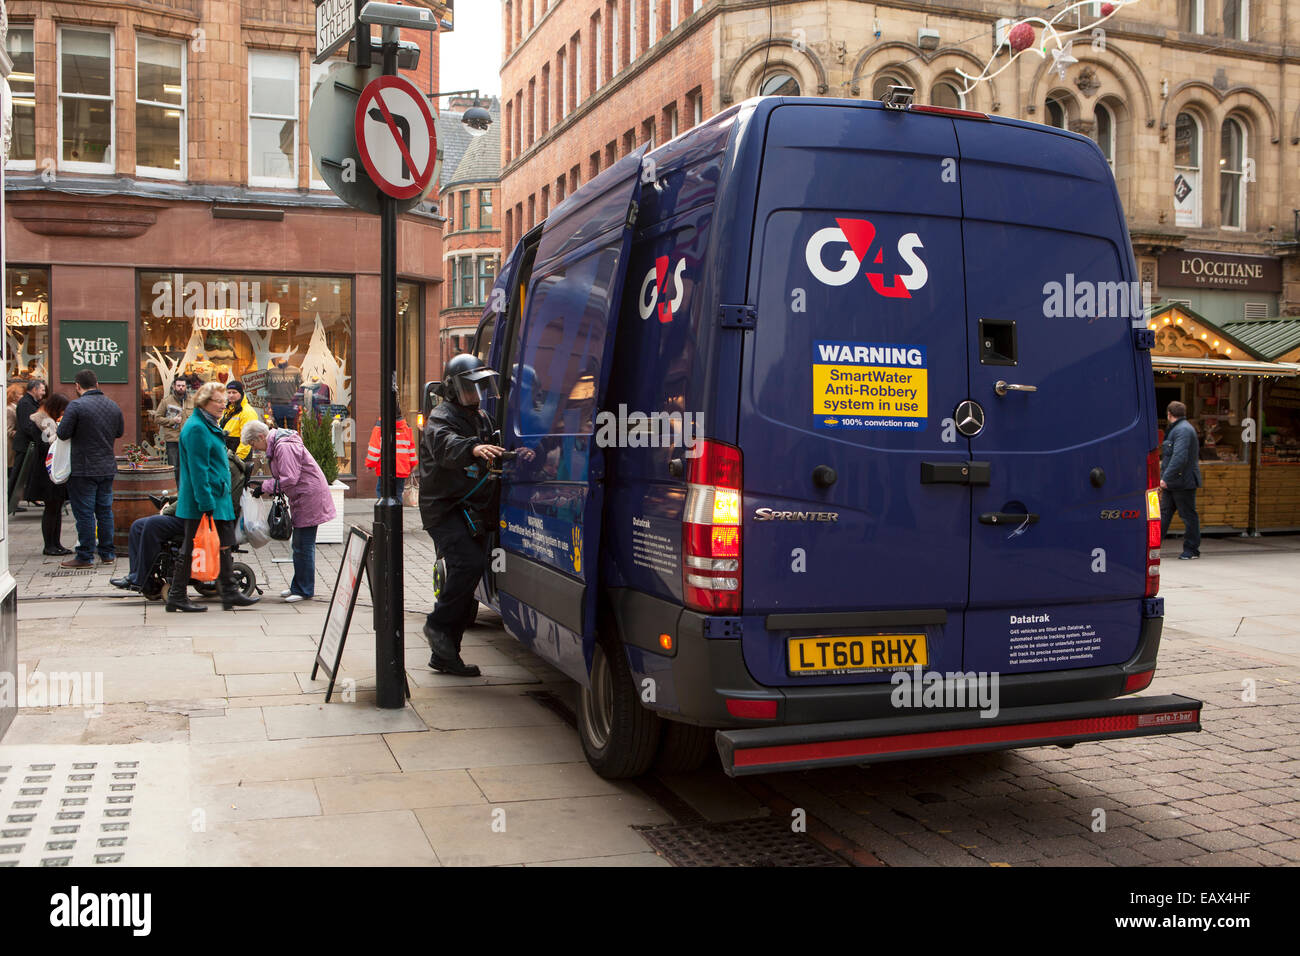 G4S Seguro en efectivo en Sprinter camioneta de tránsito con guardia de seguridad entrando vehículo 'Police Street' centro de la ciudad de Manchester, Reino Unido Foto de stock